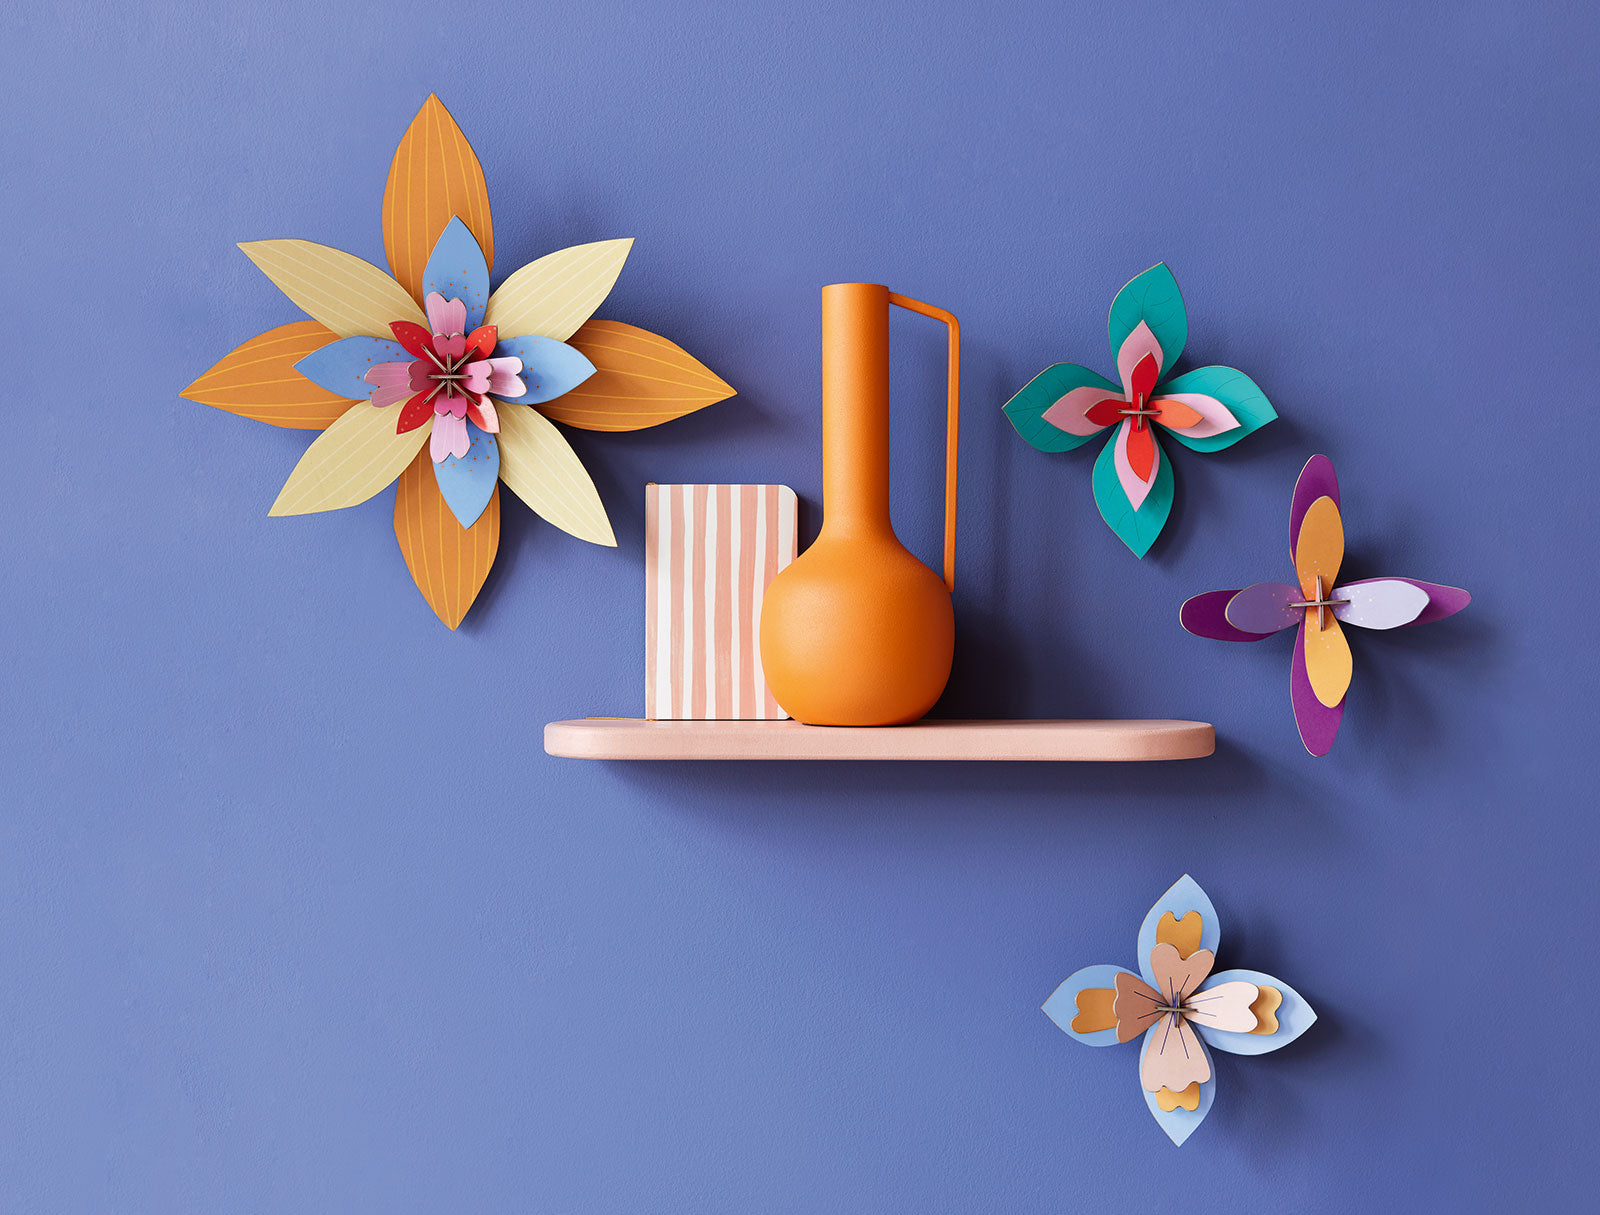 Apricot Sorbet - 3D DIY Wall Art Kit